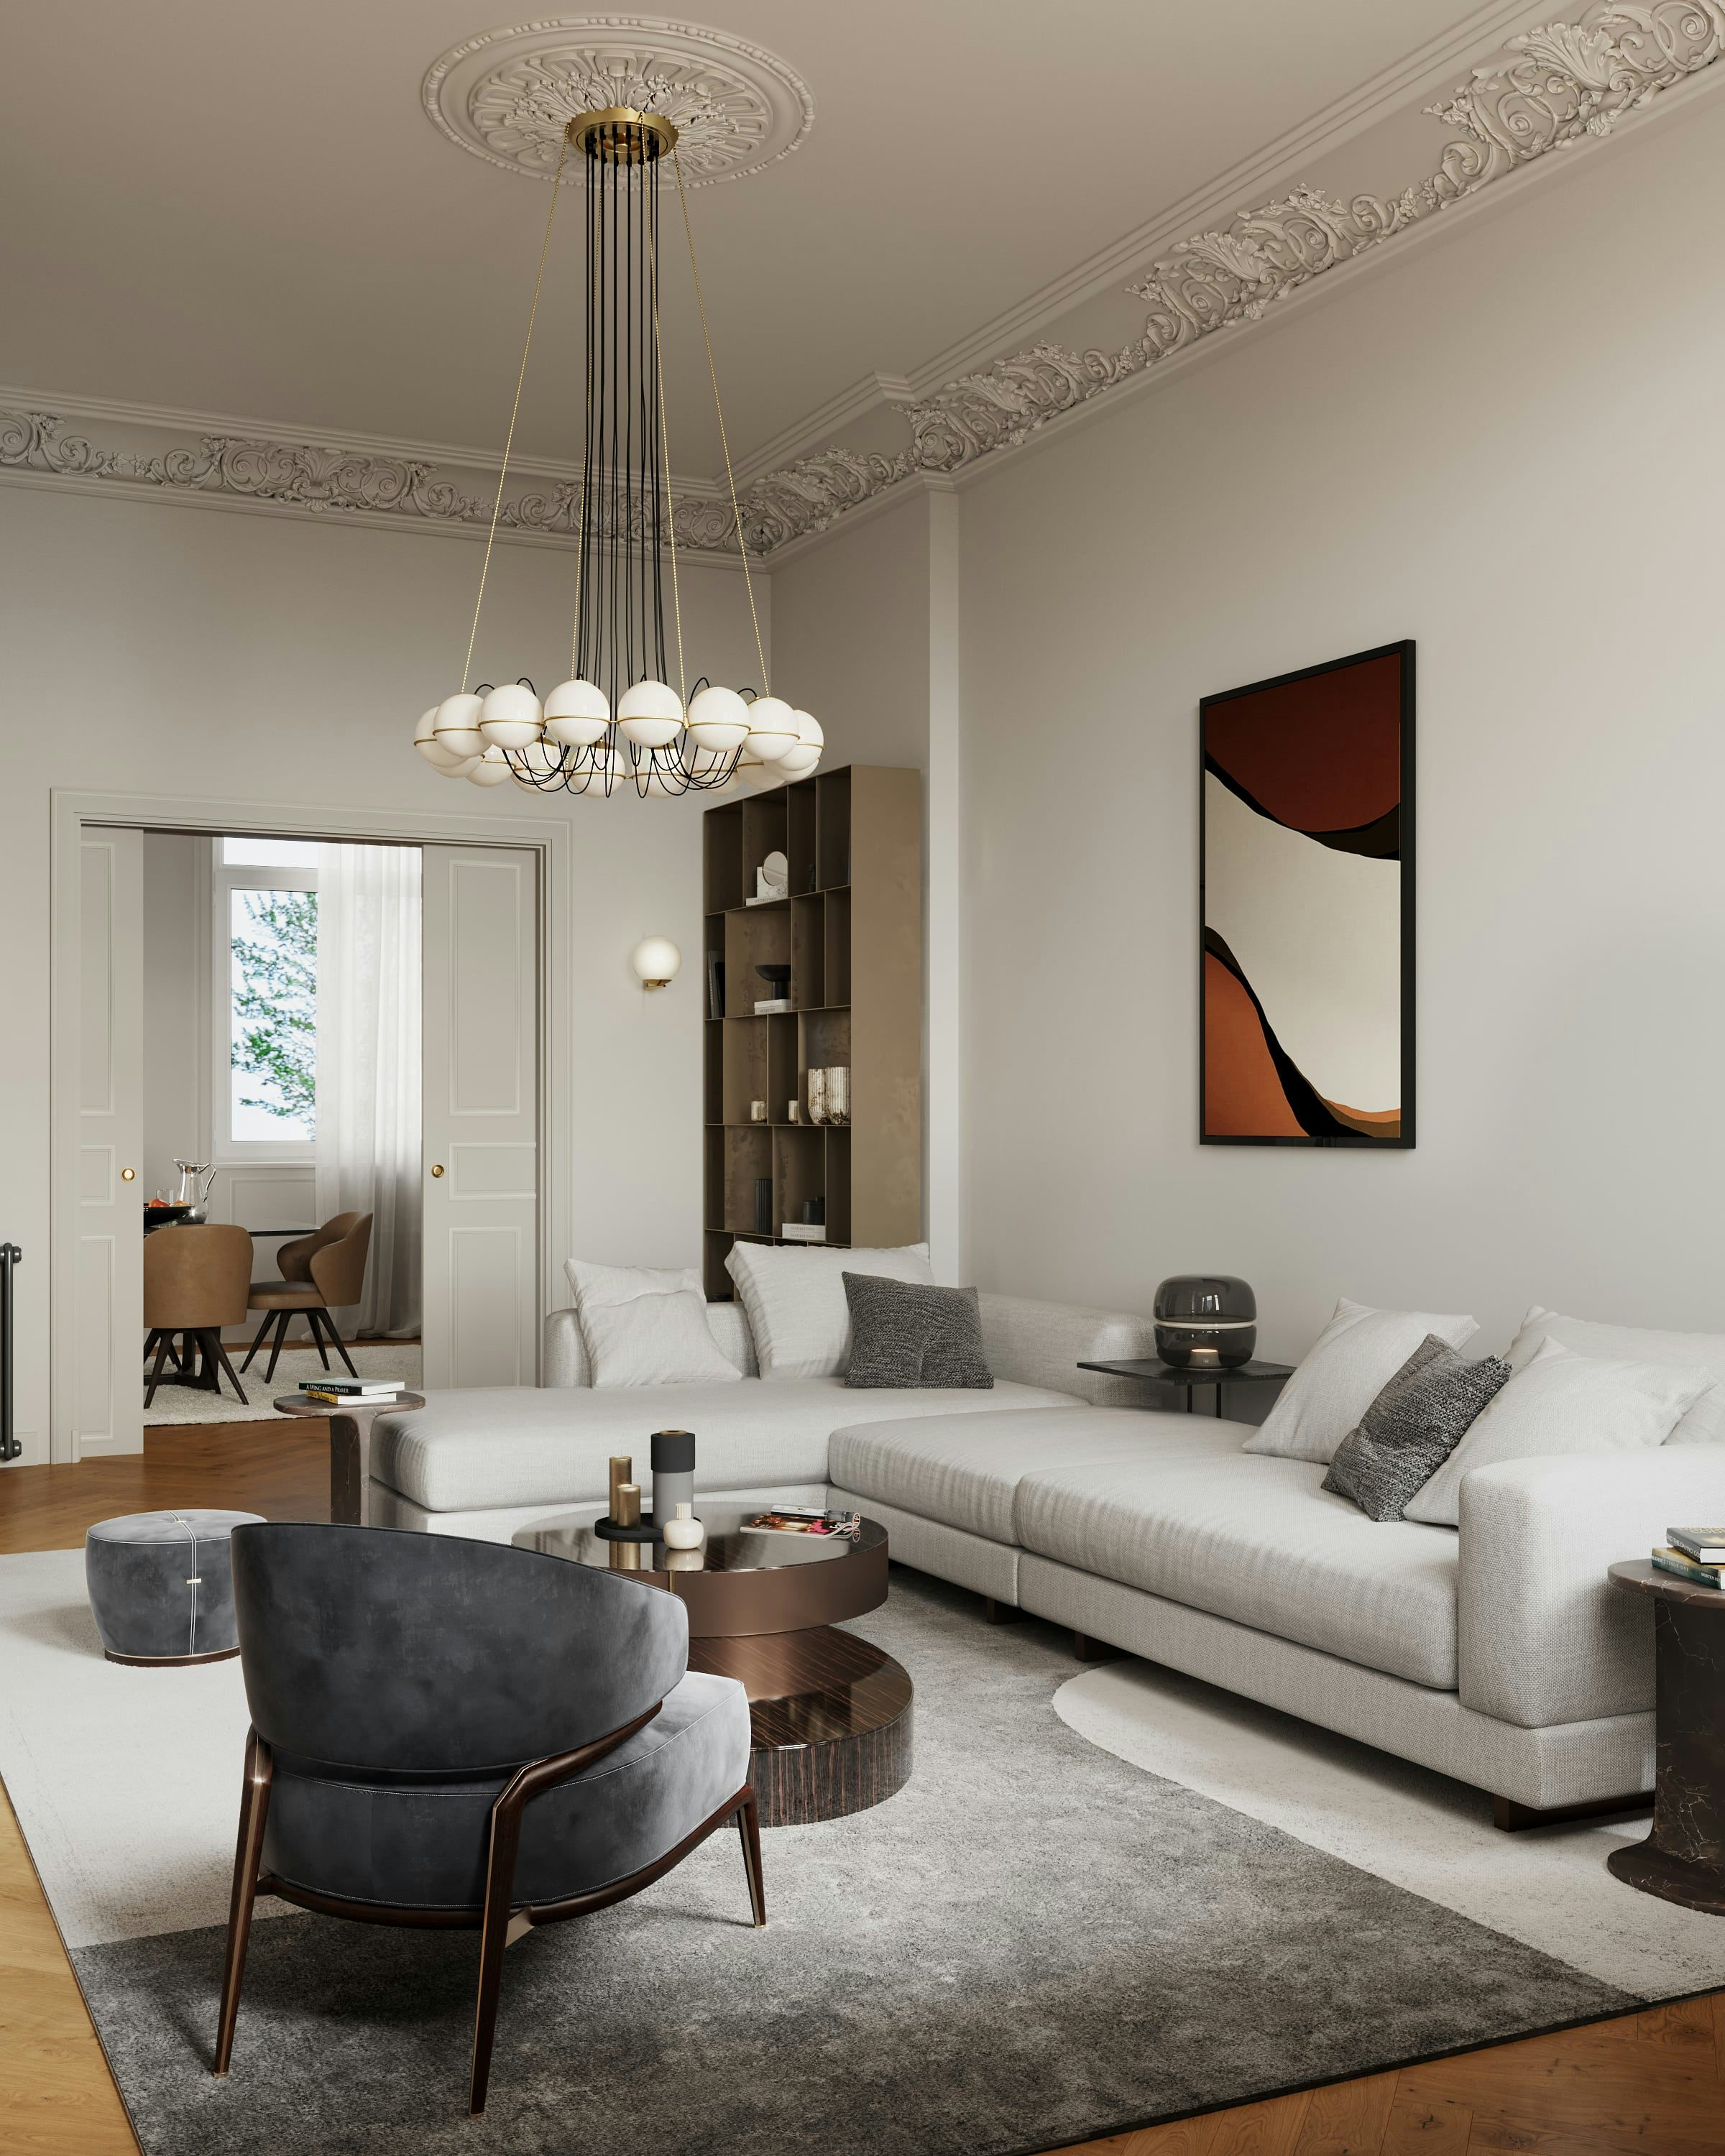 3D Architektur Innenvisualisierung des Wohnzimmers mit Blick auf das Esszimmer in einer renovierten historischen Wohnung in der Fliederstraße, Hamburg